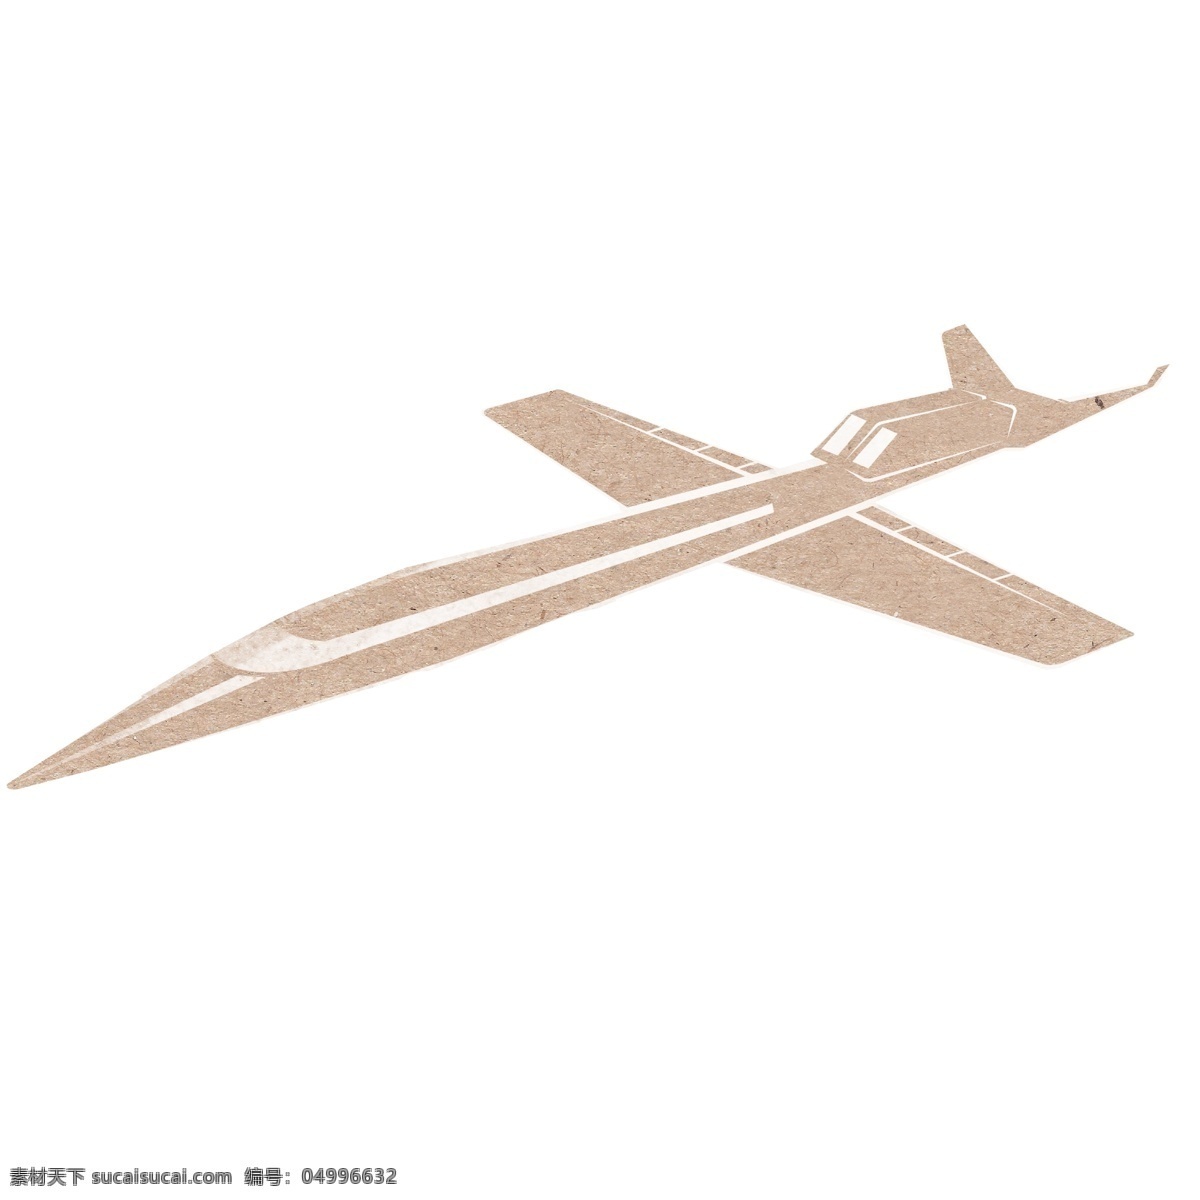 纸质 手绘 飞机 交通工具 纸质手绘飞机 文艺飞机 手绘交通插画 升空的飞机 文艺 卡通的插画